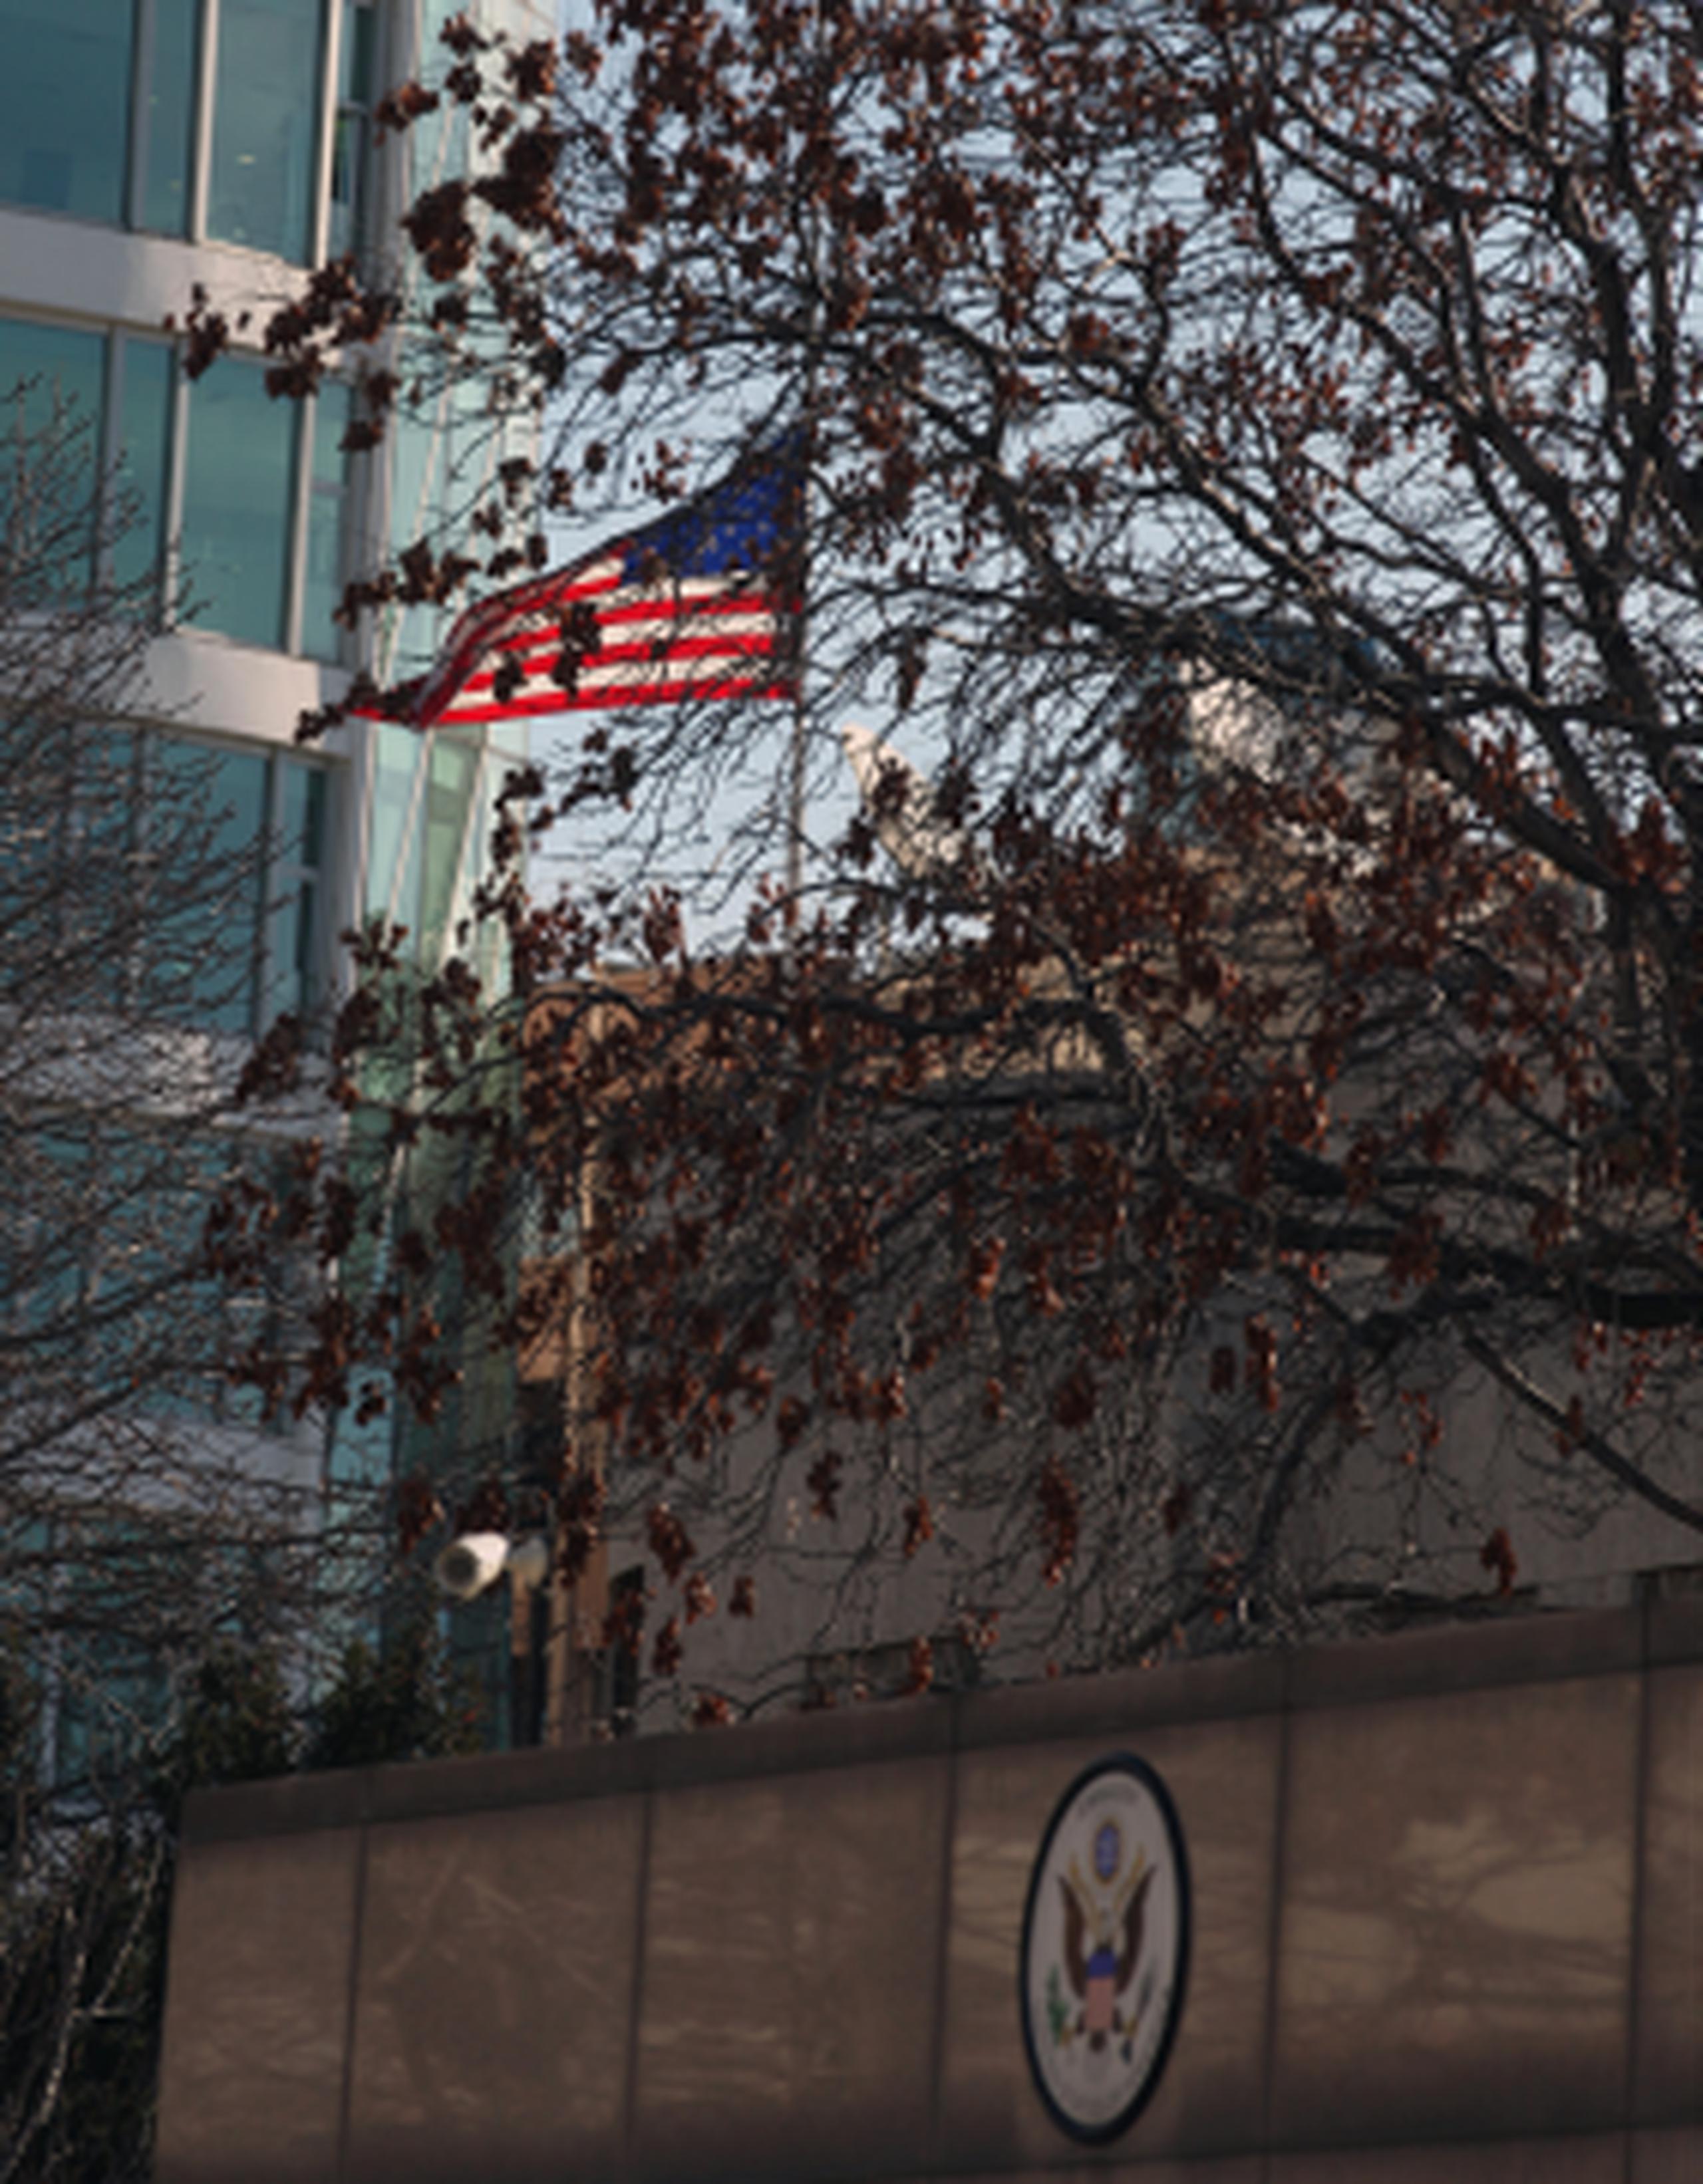 La bandera estadounidense ondeaba el sábado a media asta en la embajada estadounidense. (AP/Burhan Ozbilici)